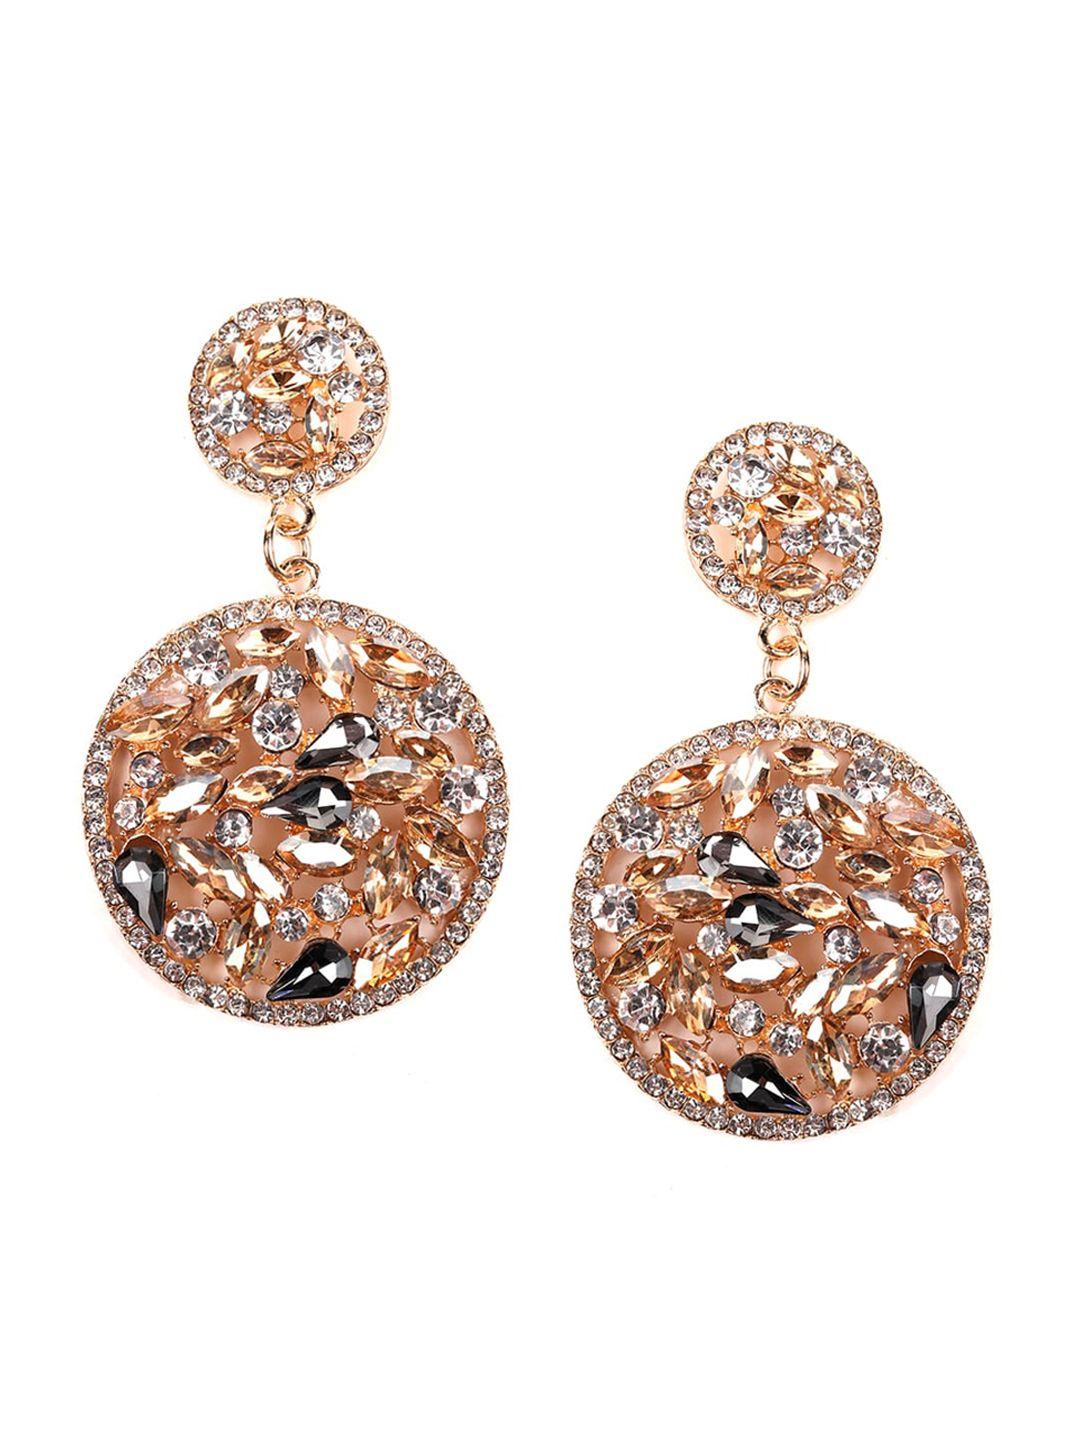 odette gold-toned oval drop earrings